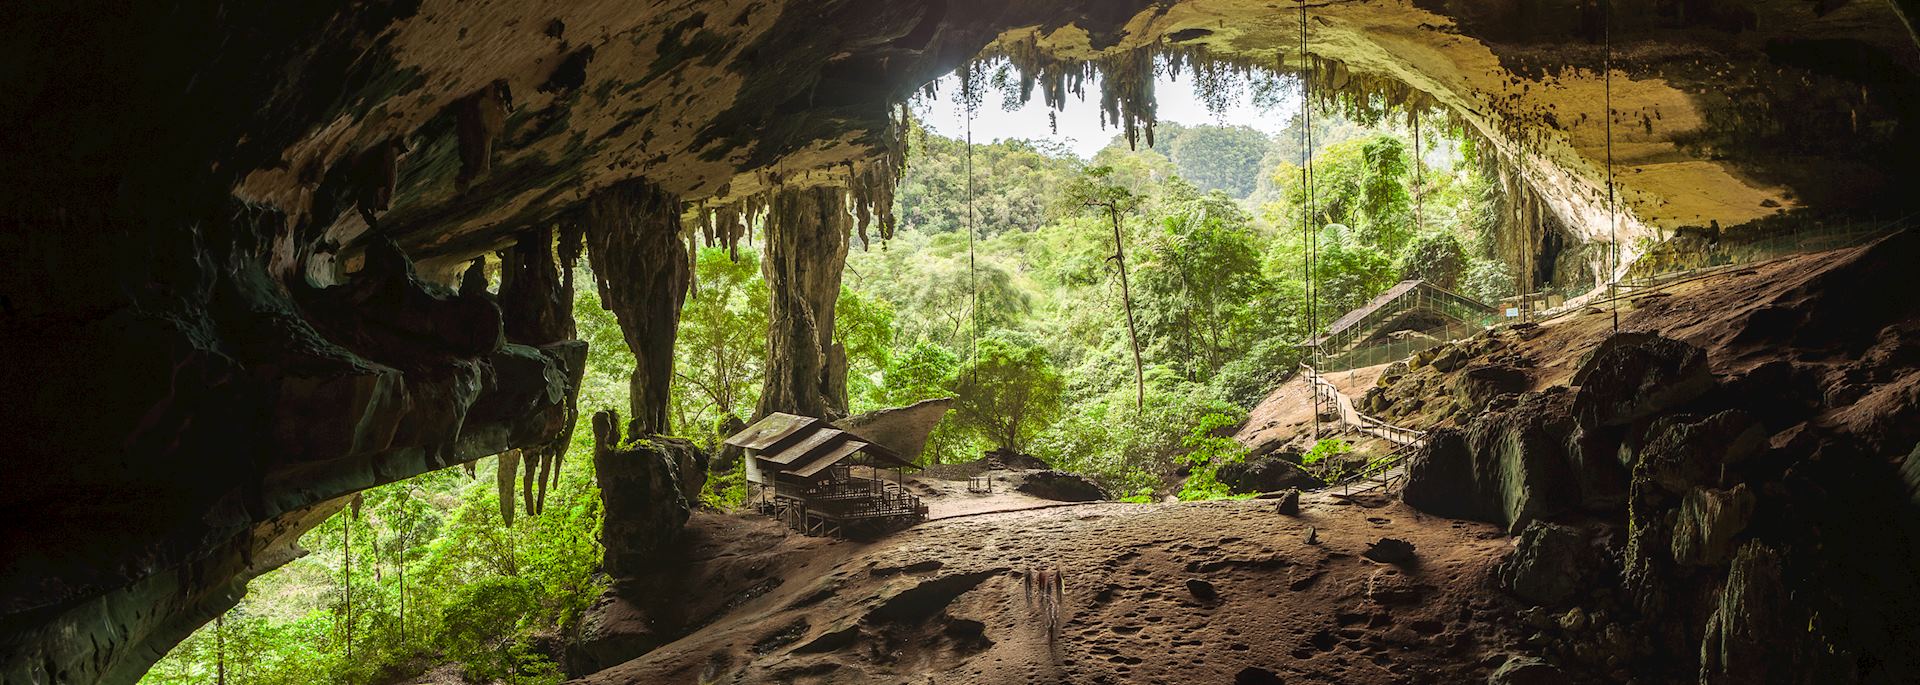 Caves at Niah National Park